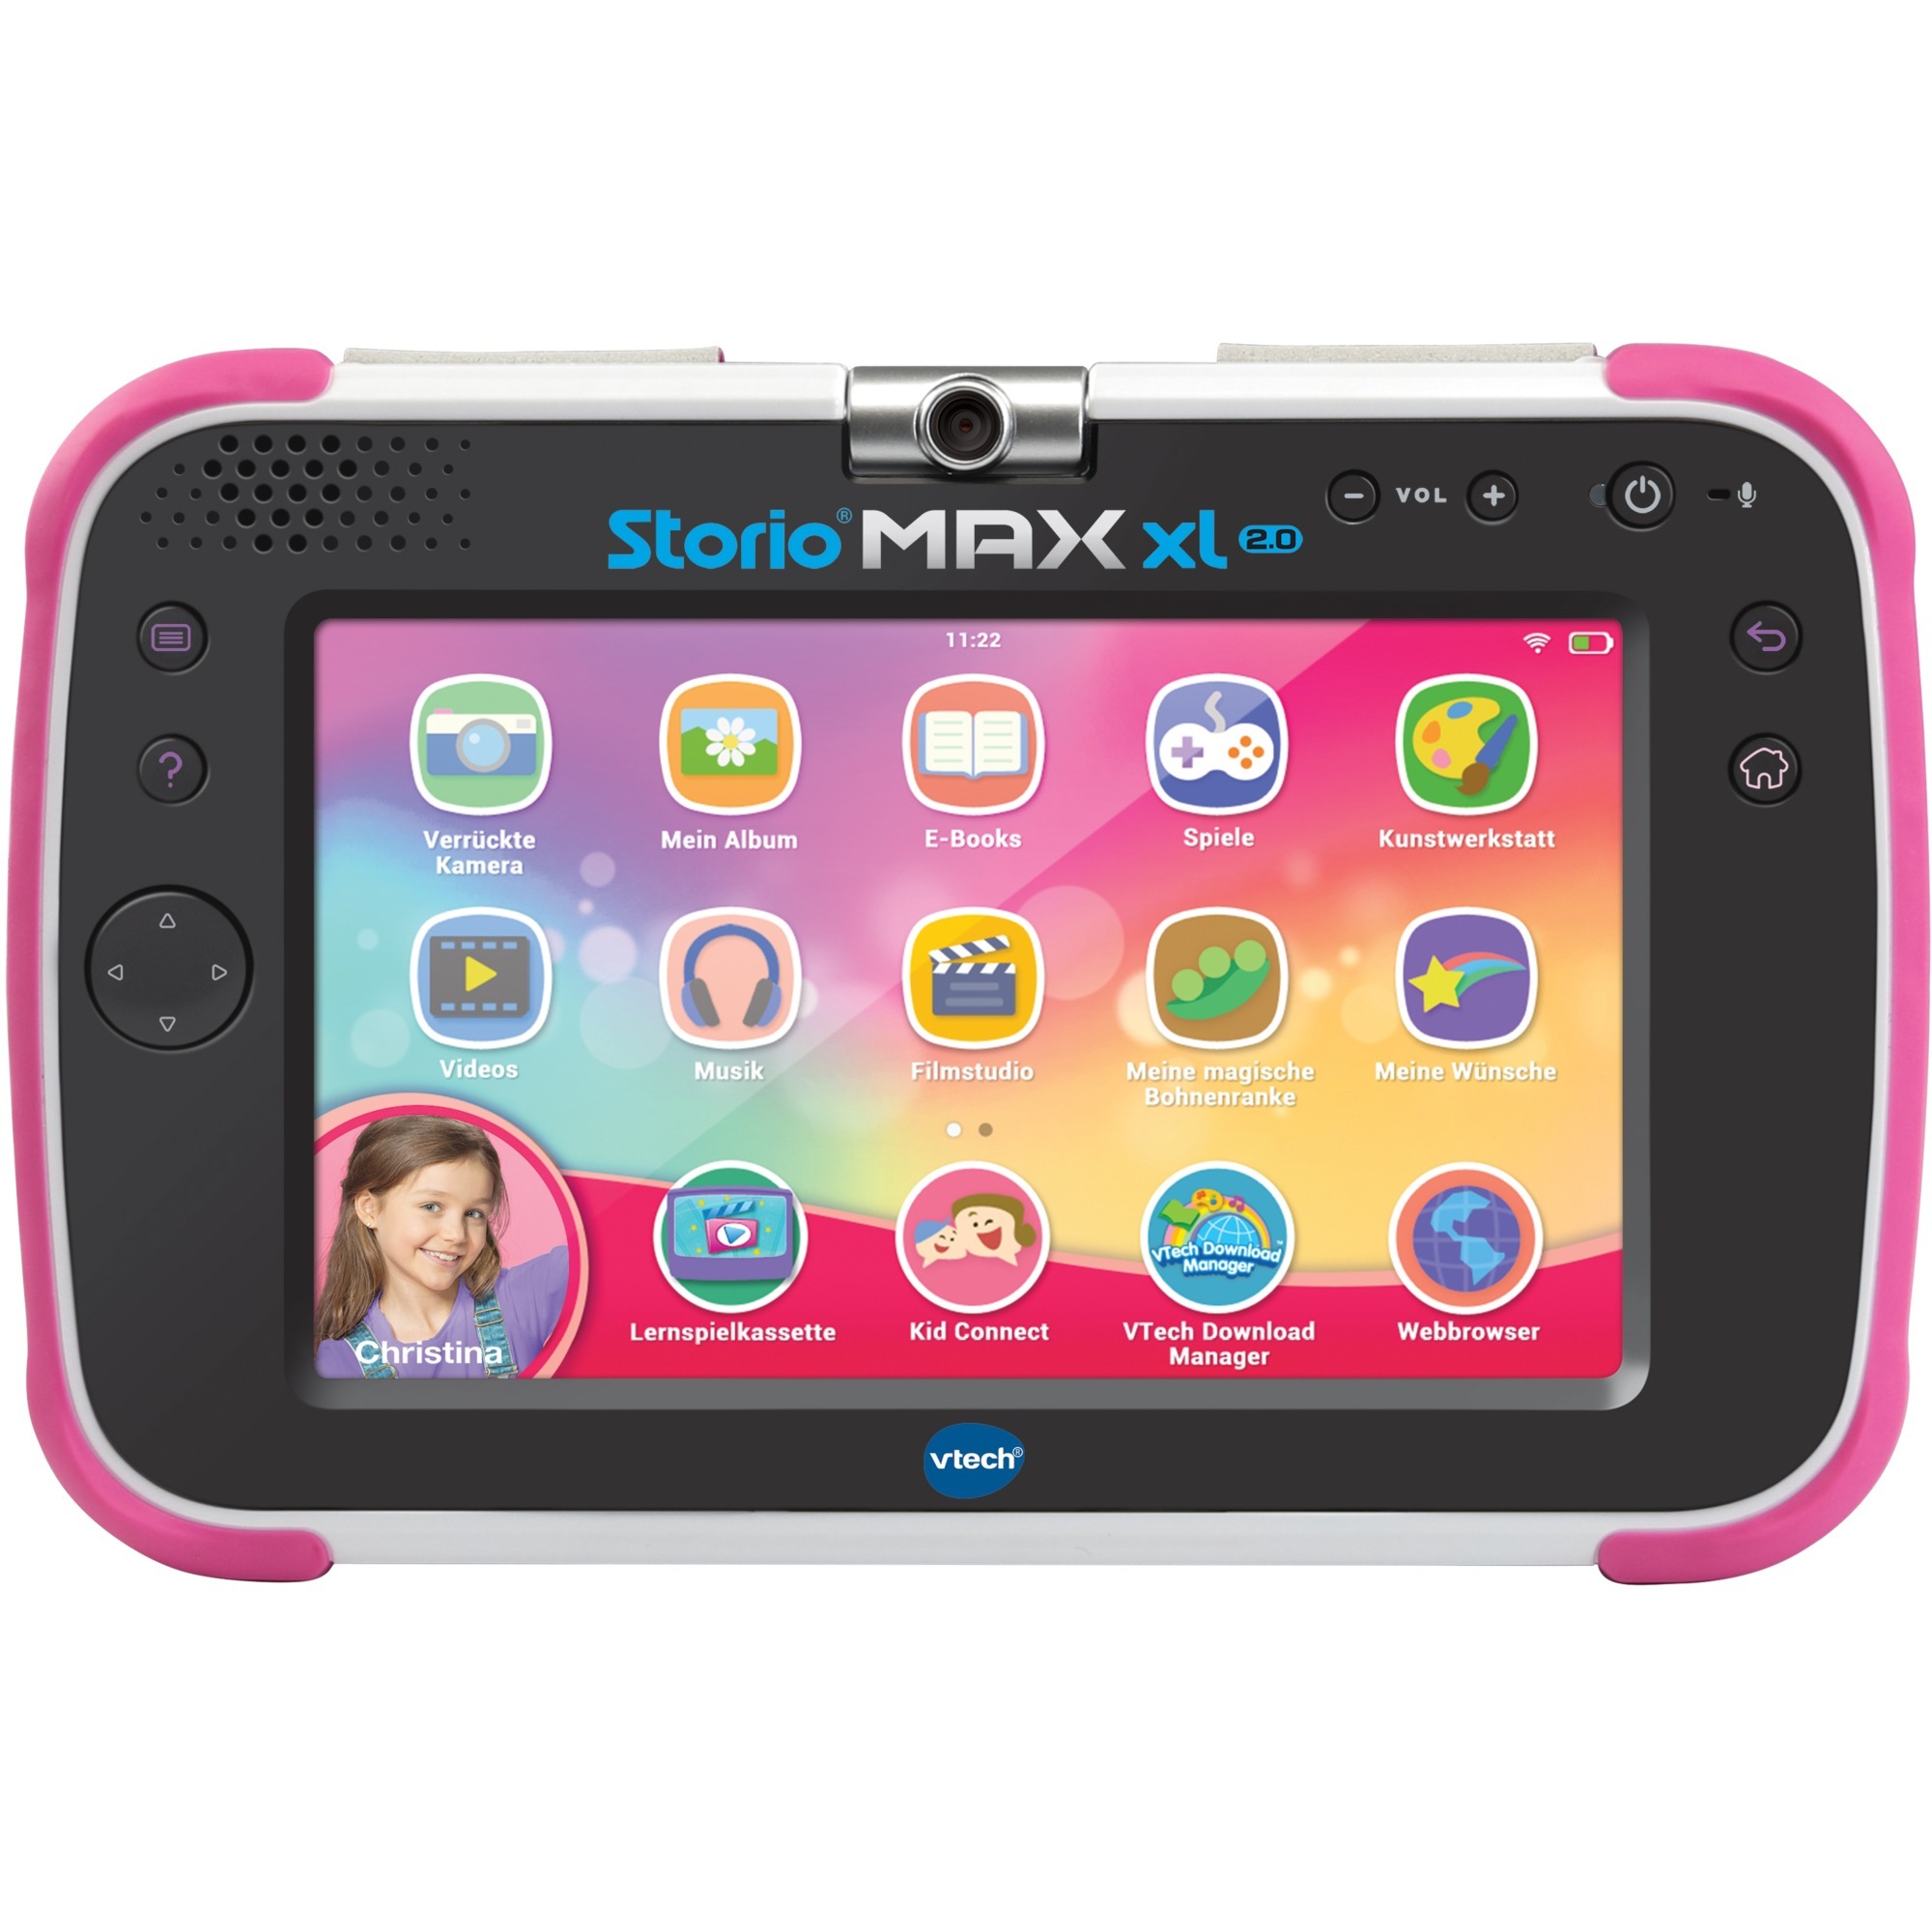 Image of Alternate - Storio MAX XL 2.0 pink, Lerncomputer online einkaufen bei Alternate